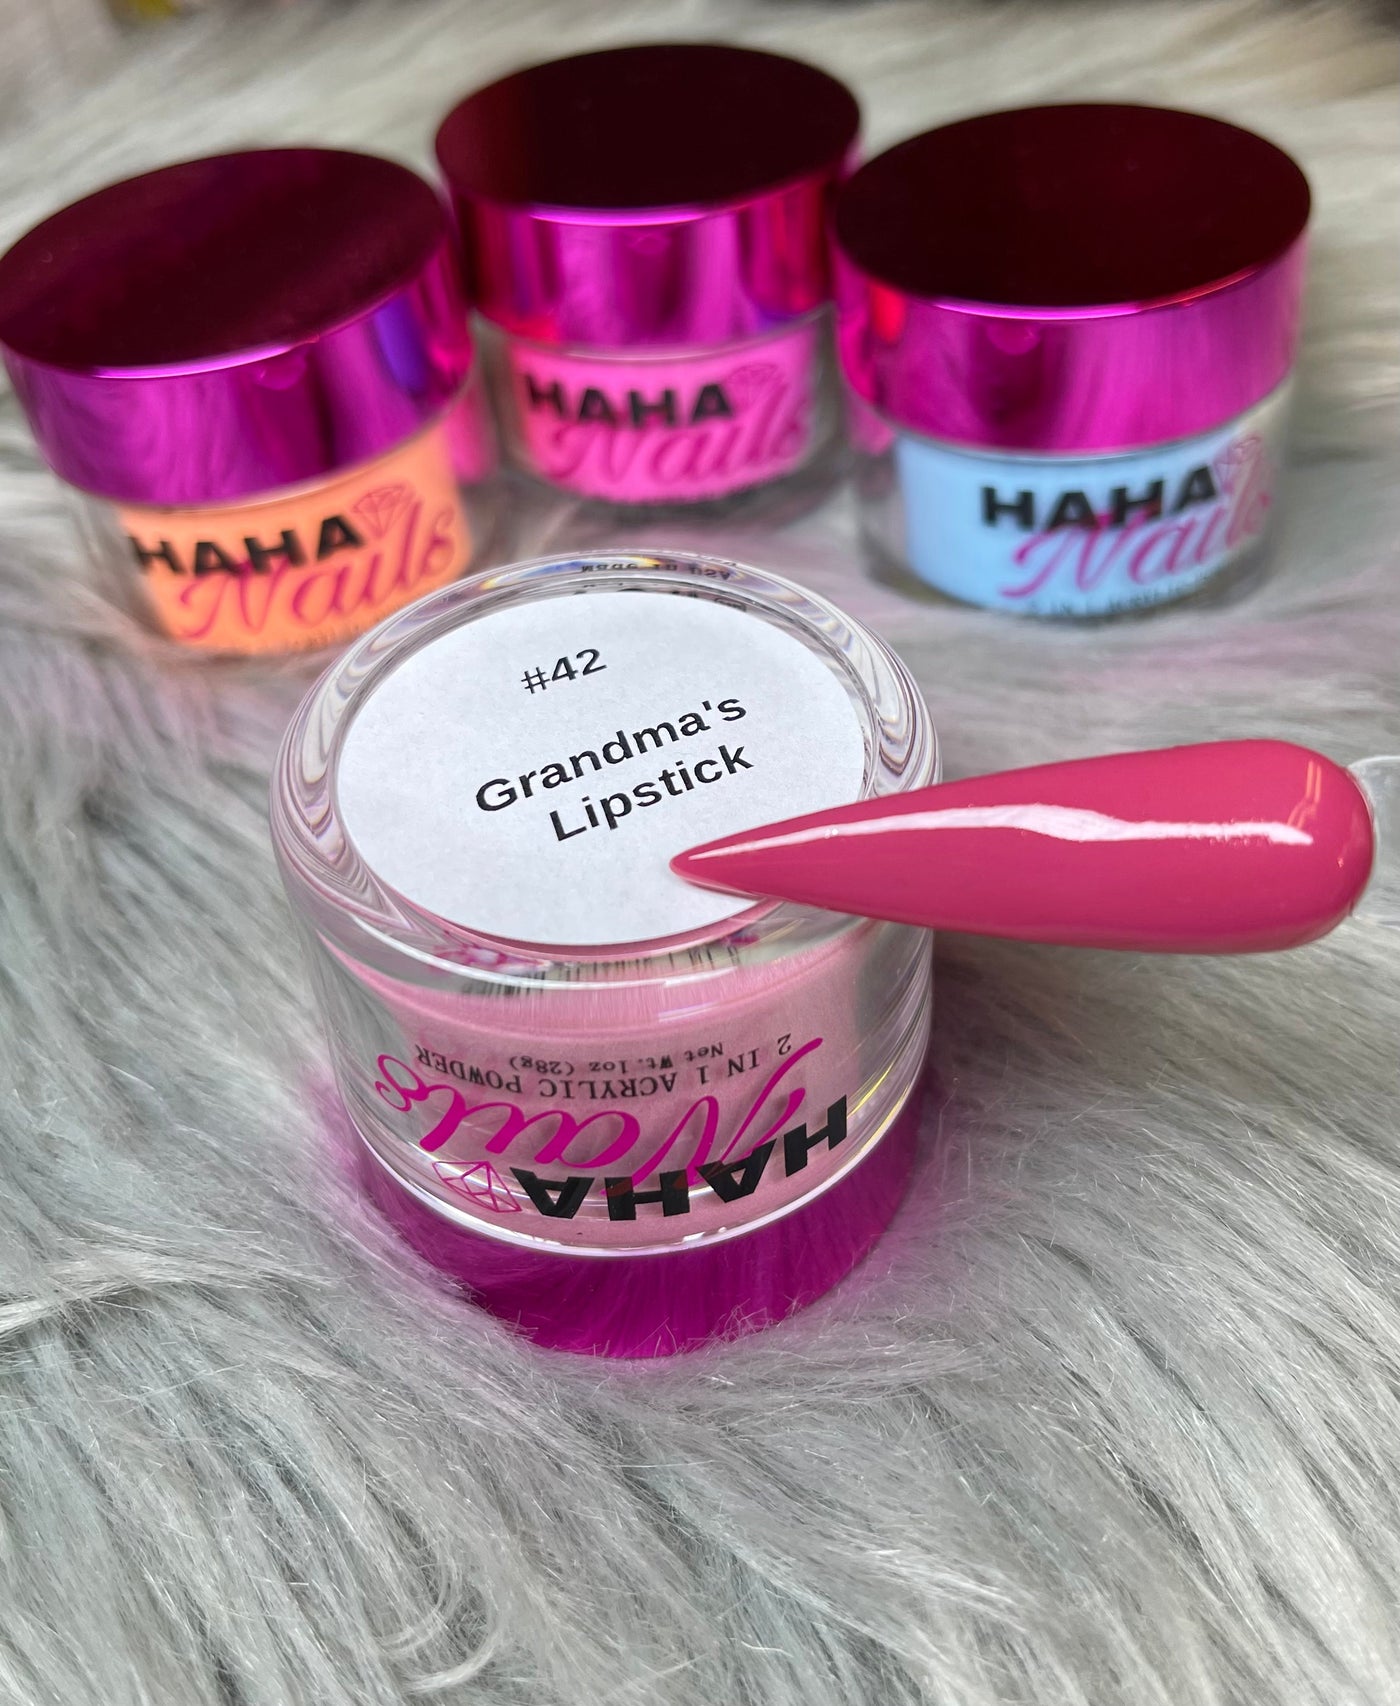 #42 Grandma’s Lipstick